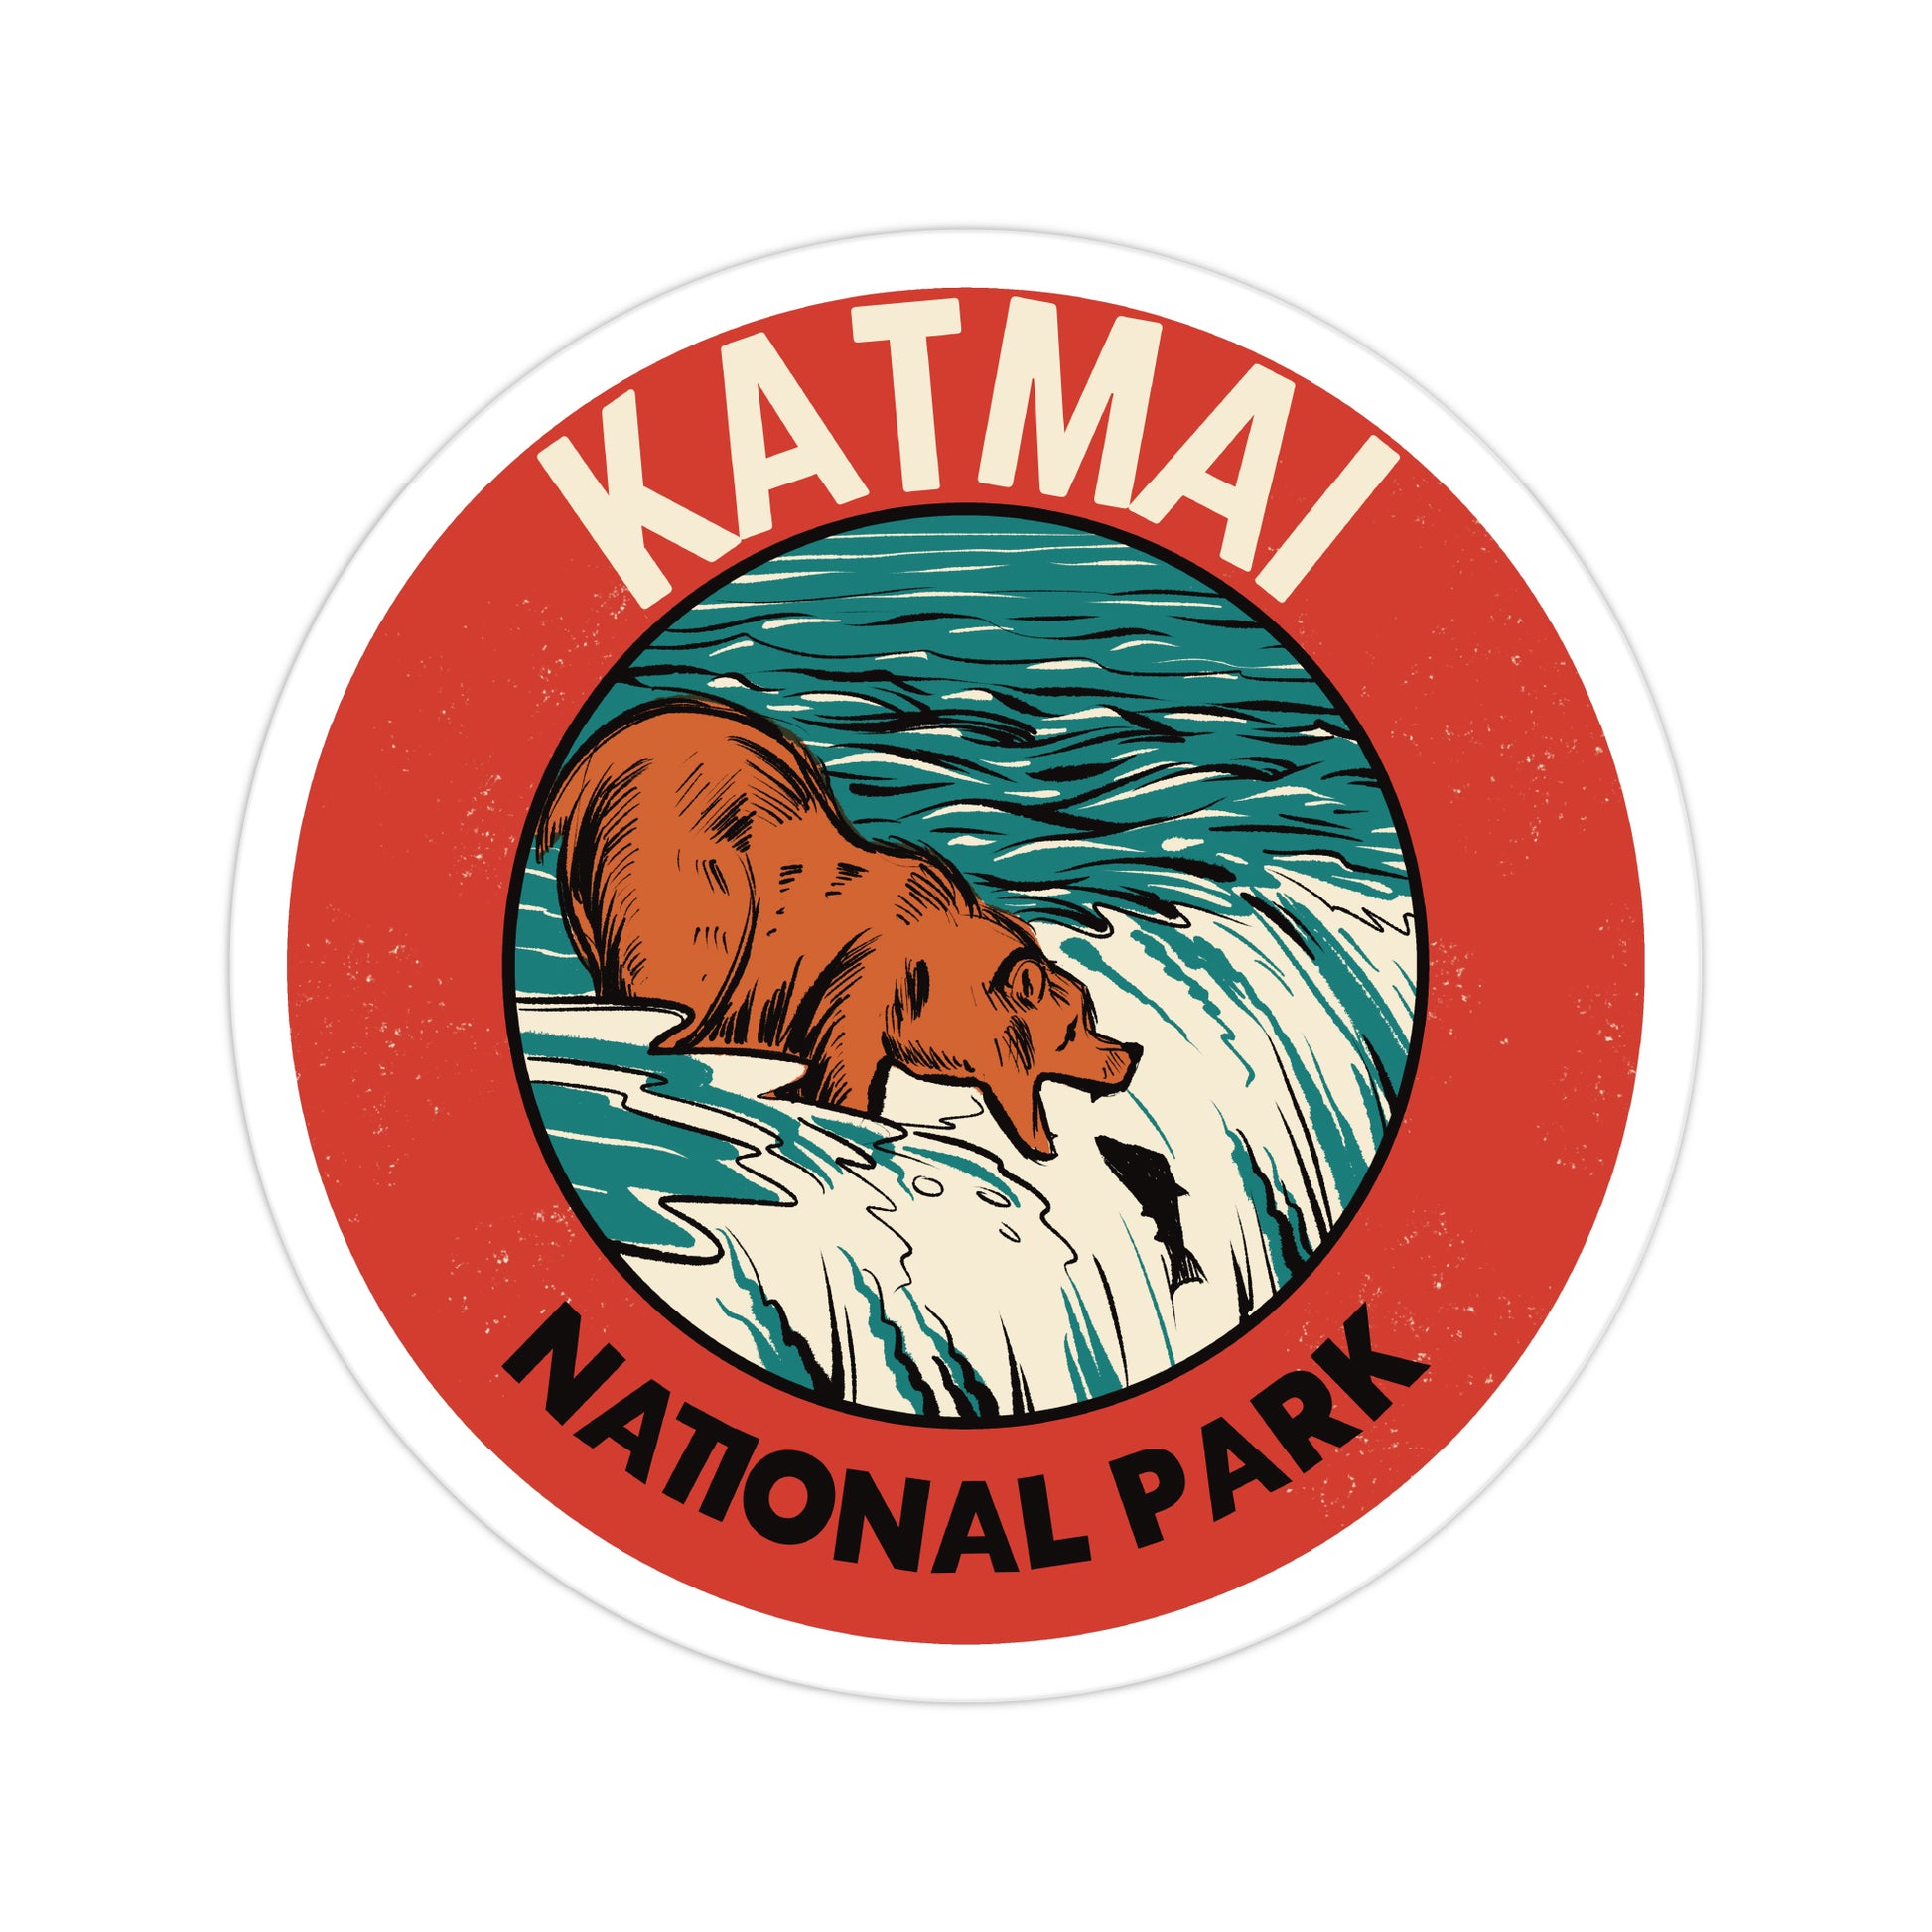 A sticker of Katmai National Park